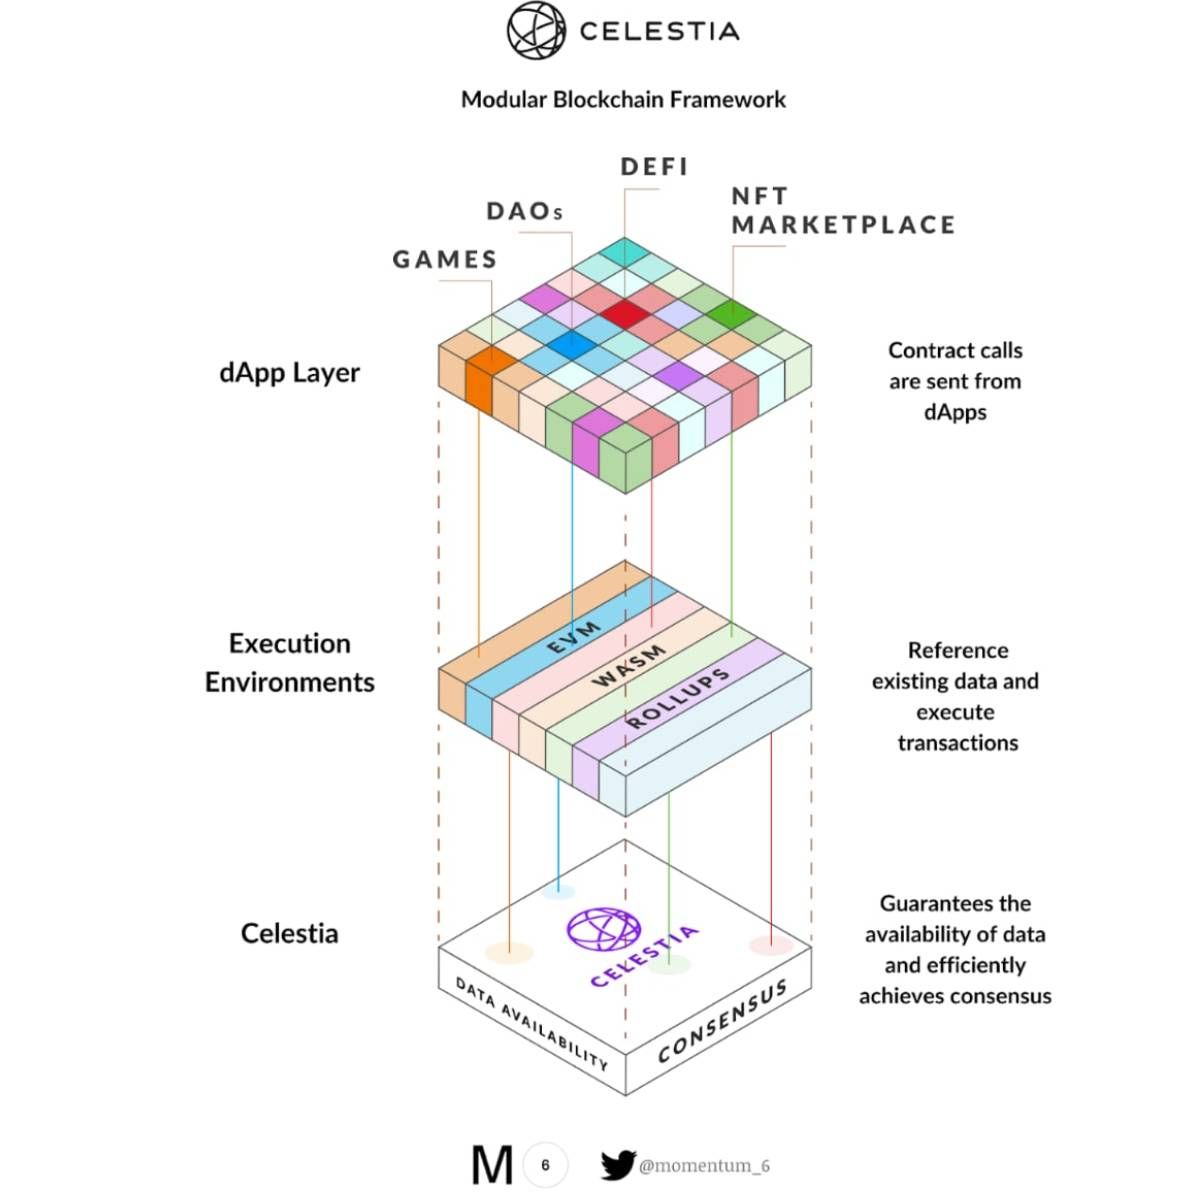 Khung cấu trúc mô hình modular blockchain với Celestia làm nền xử lý DA và Consensus